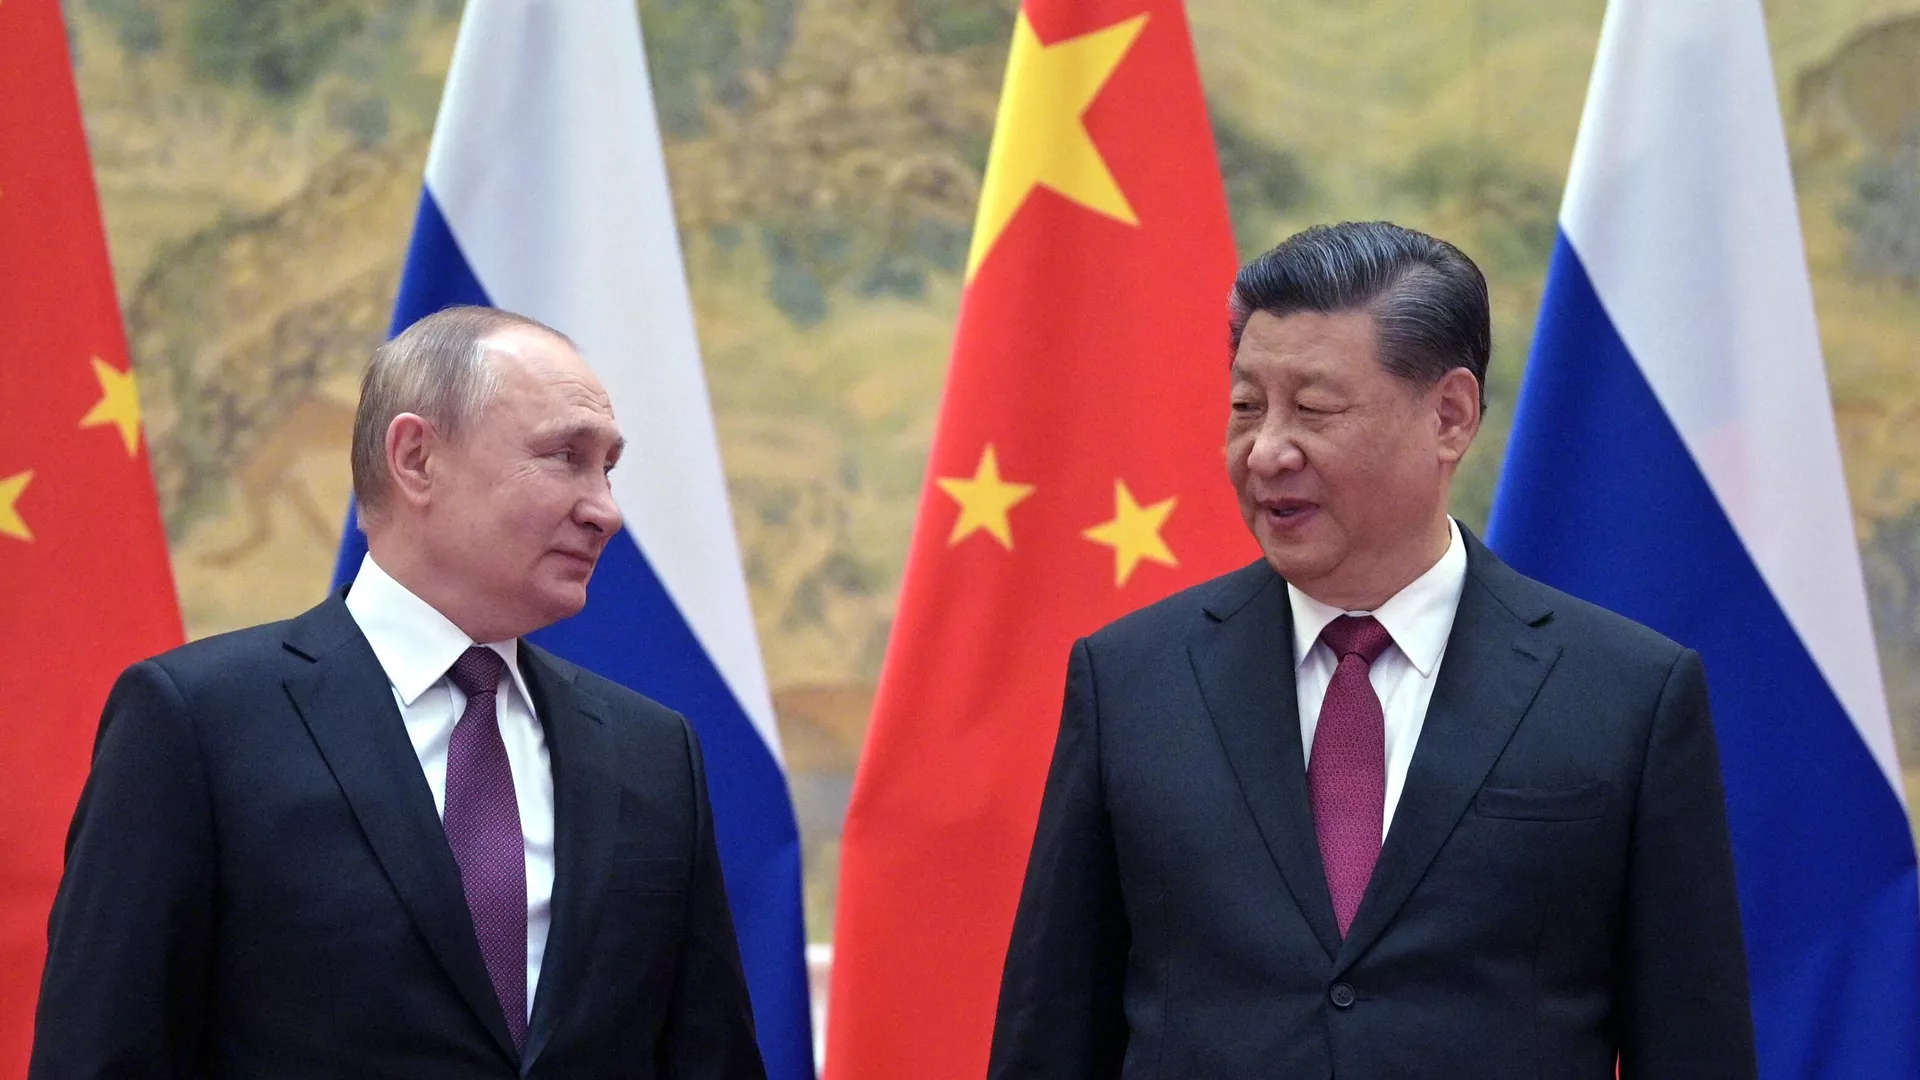 Джо Байден: на данный момент Китай не оказывал военную помощь России, но это может случиться